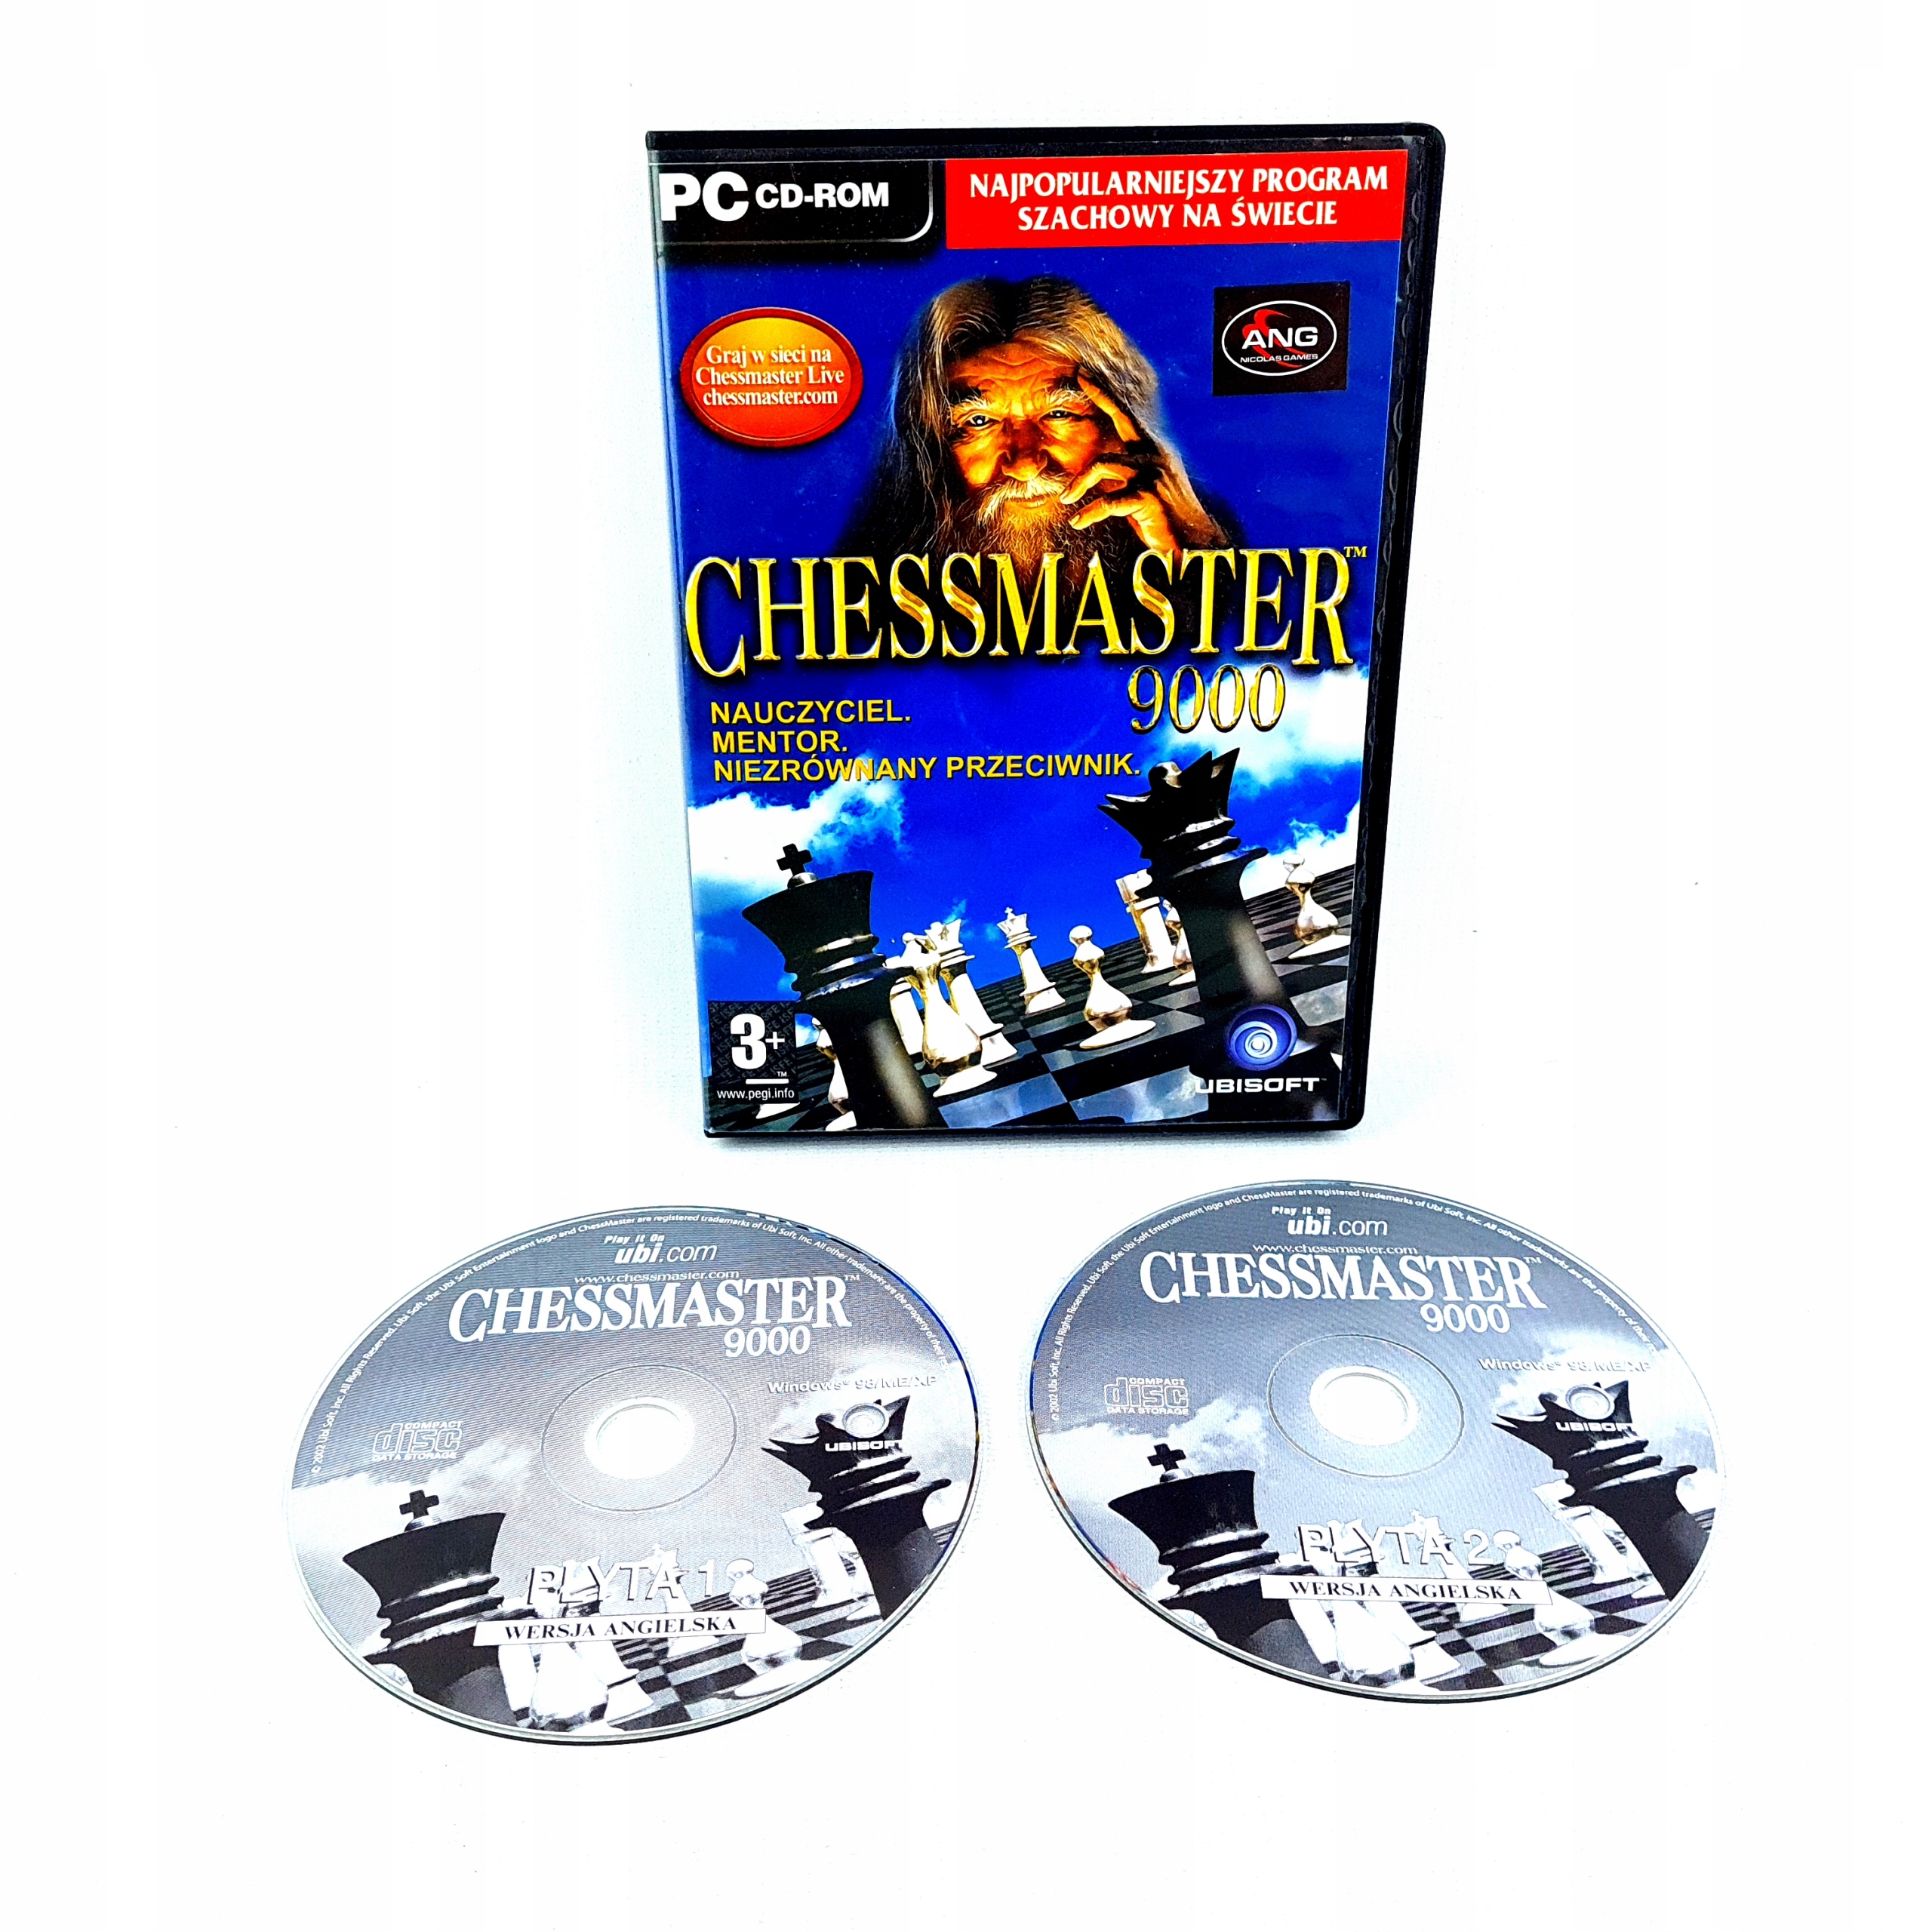 CHESSMASTER GRANDMASTER EDITION SZACHY PC PL - Stan: używany 470 zł -  Sklepy, Opinie, Ceny w